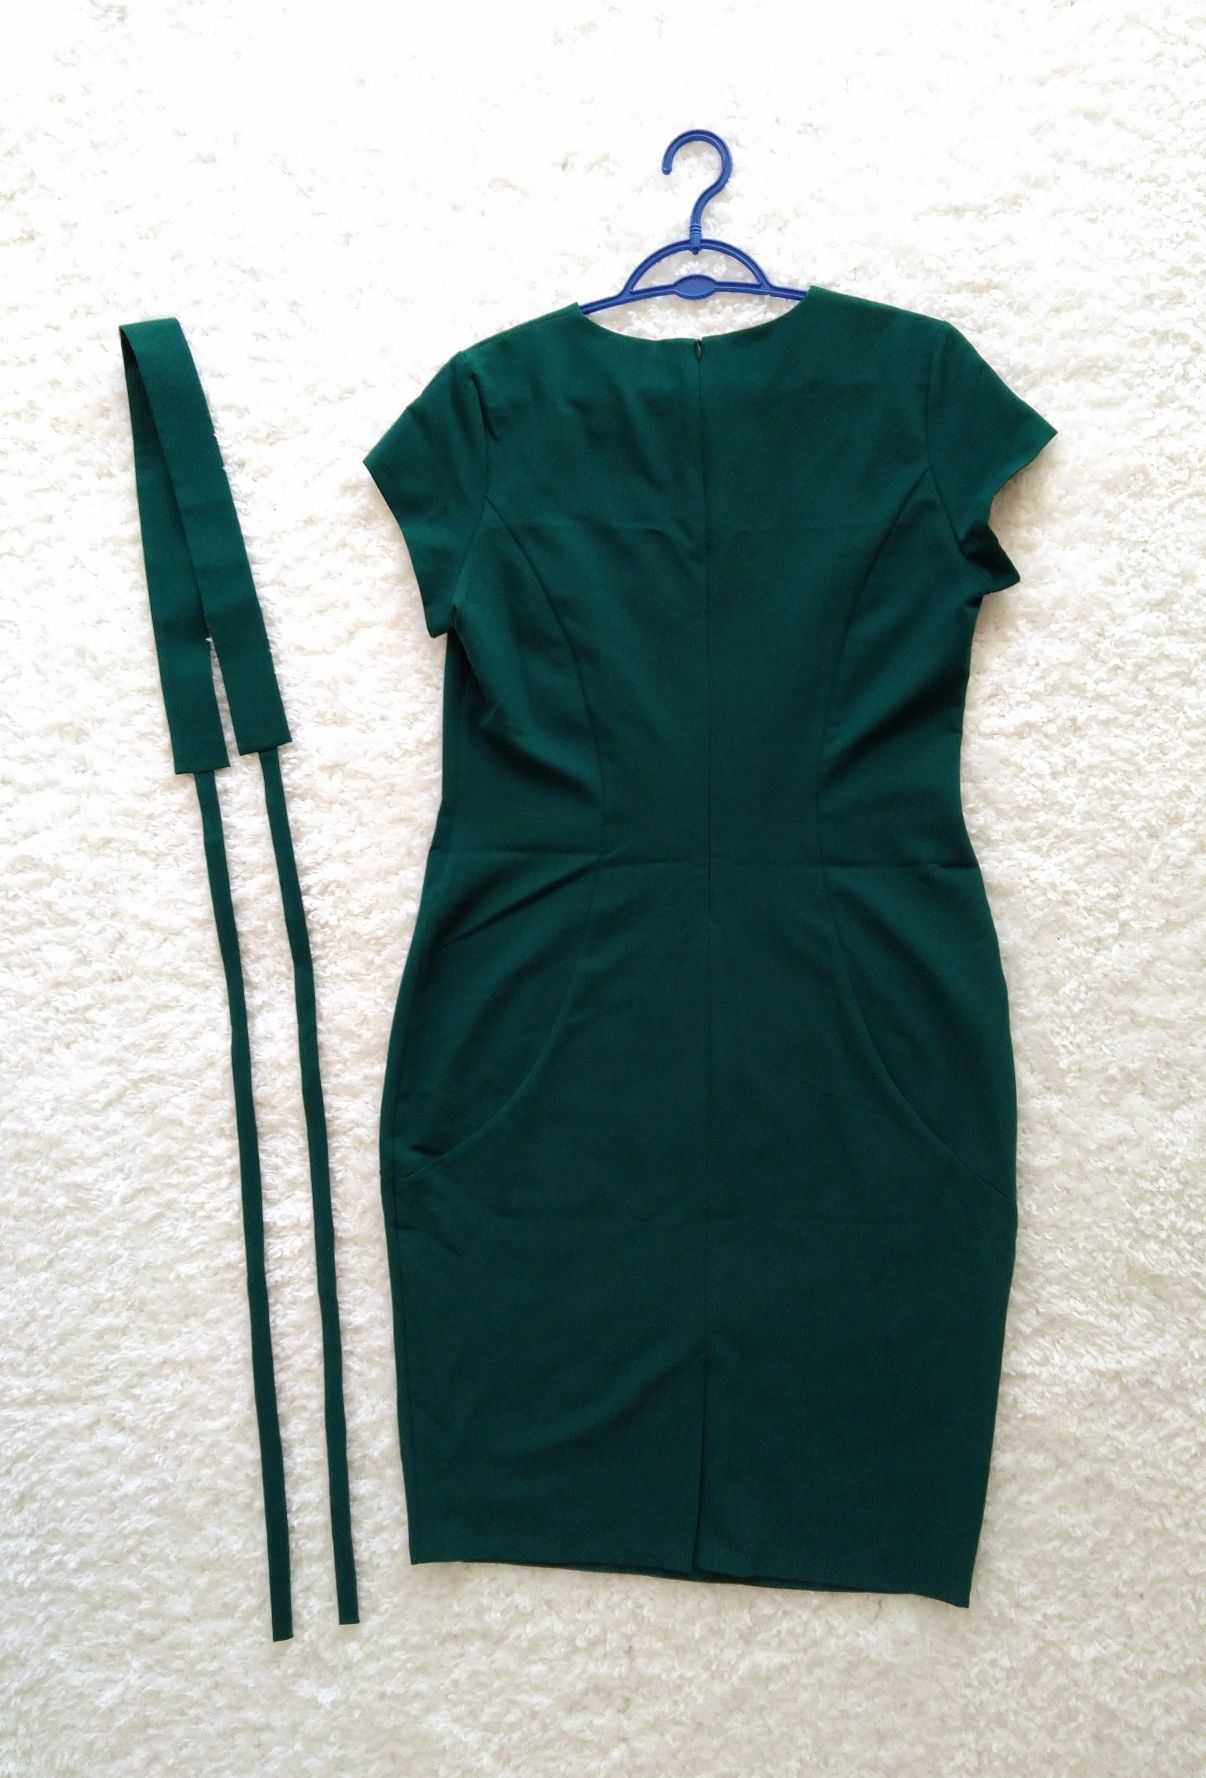 Sukienka zielona ciemno-zielona elegancka z paskiem rozmiar L NOWA